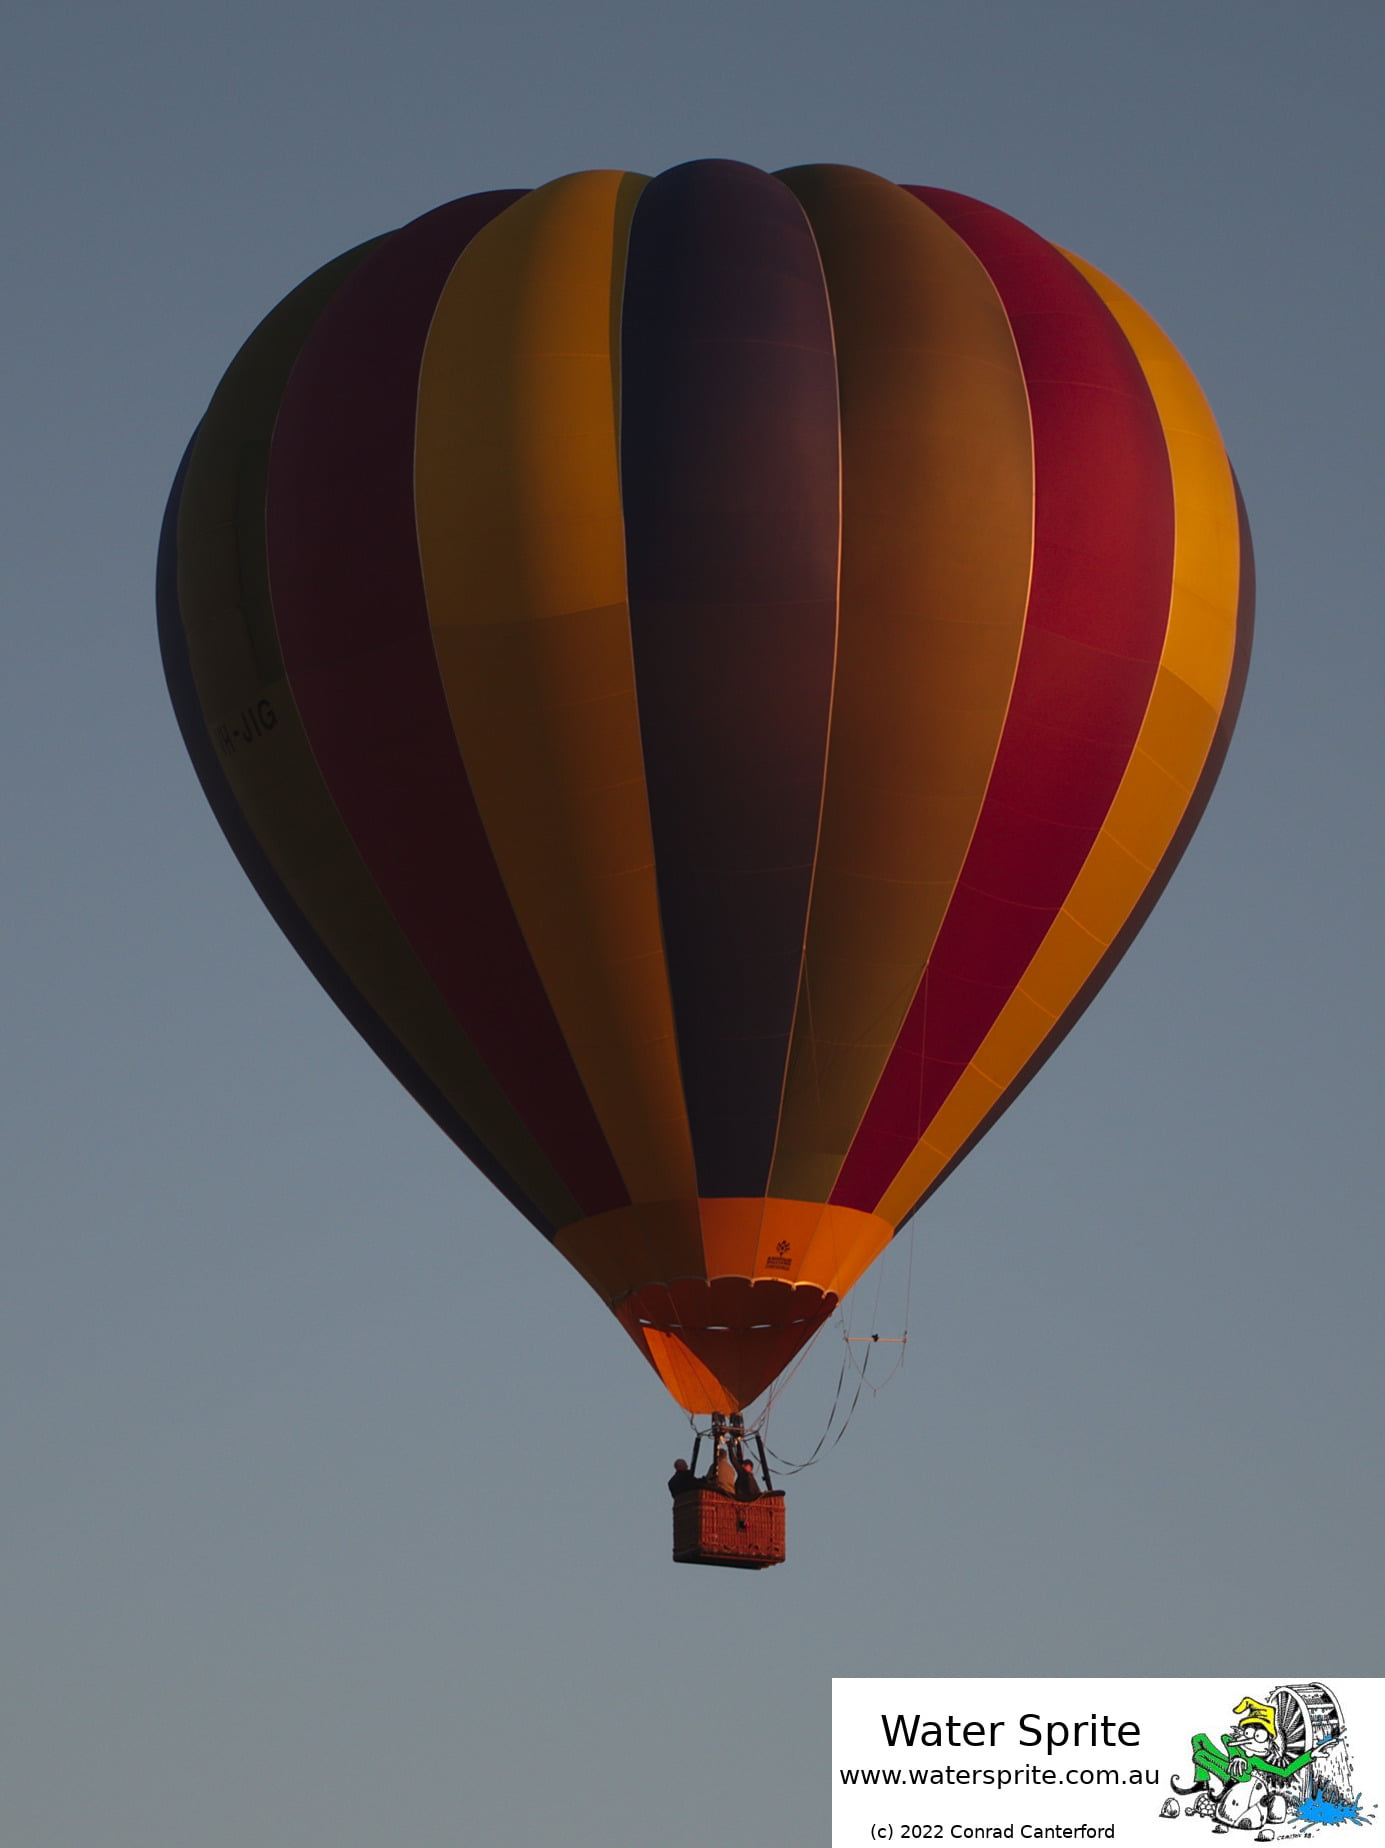 Balloon in flight.